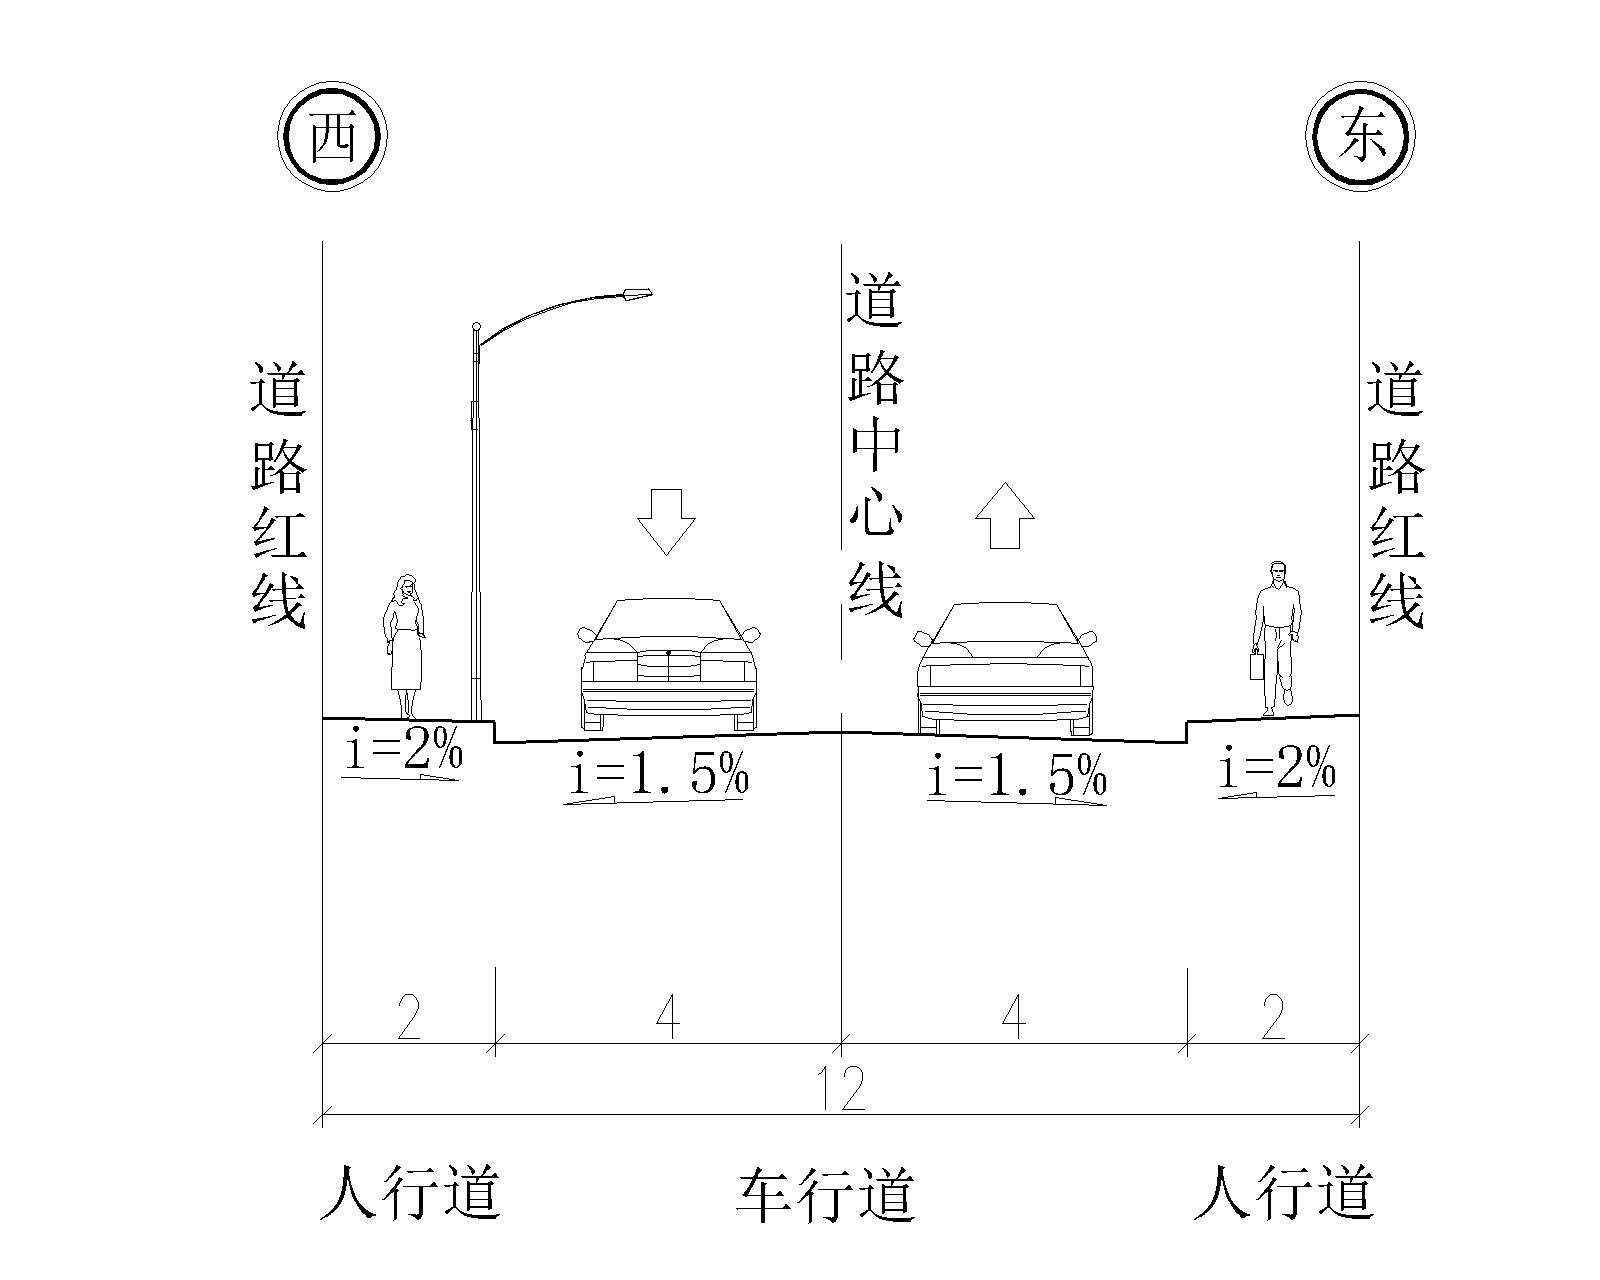 道路横断面为一幅路形式,其中路面宽8m,两侧人行道各宽2米